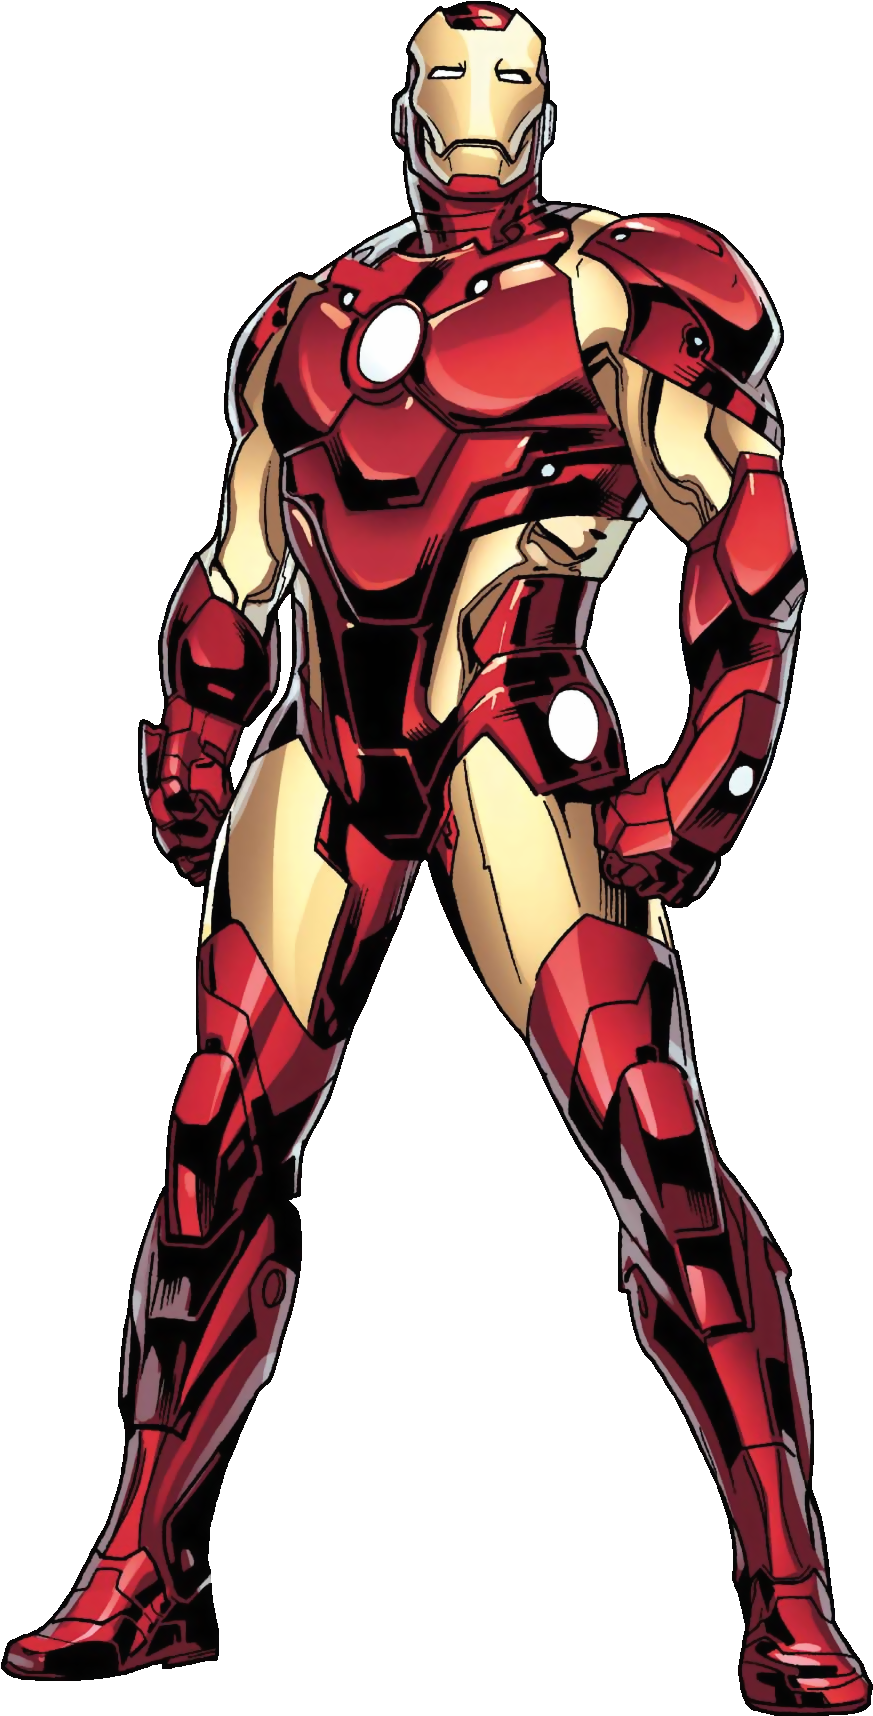 Iron Man Marvel Comics - Iron Man Marvel Comics (930x1770)